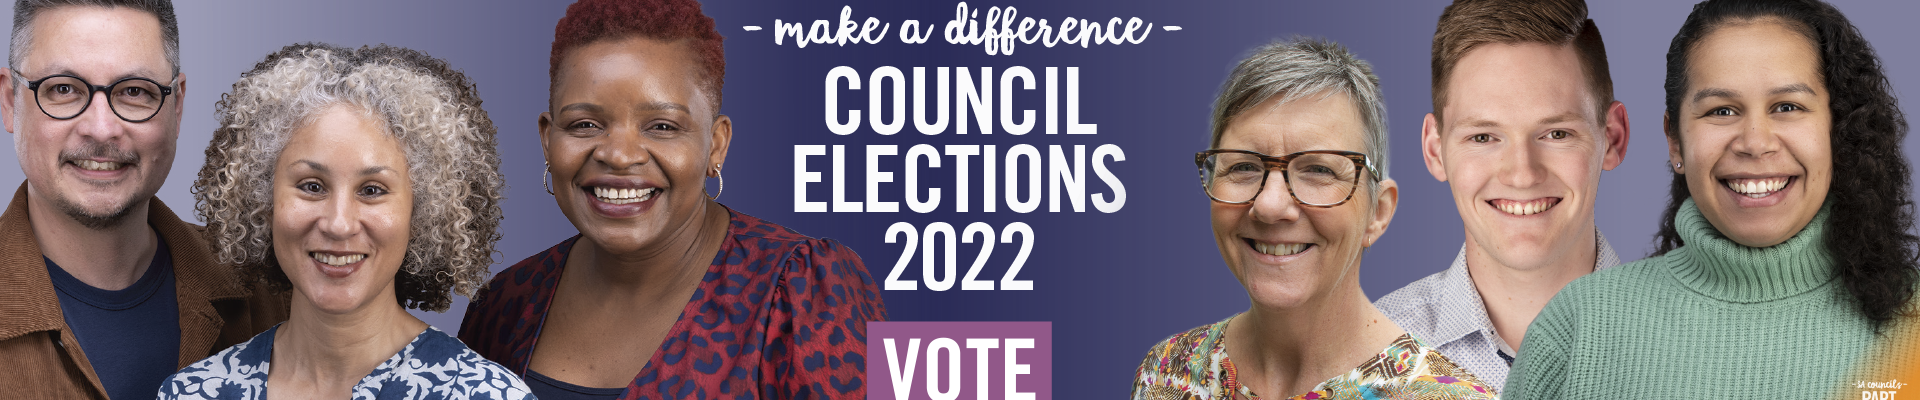 Council Elections 2022 - Vote